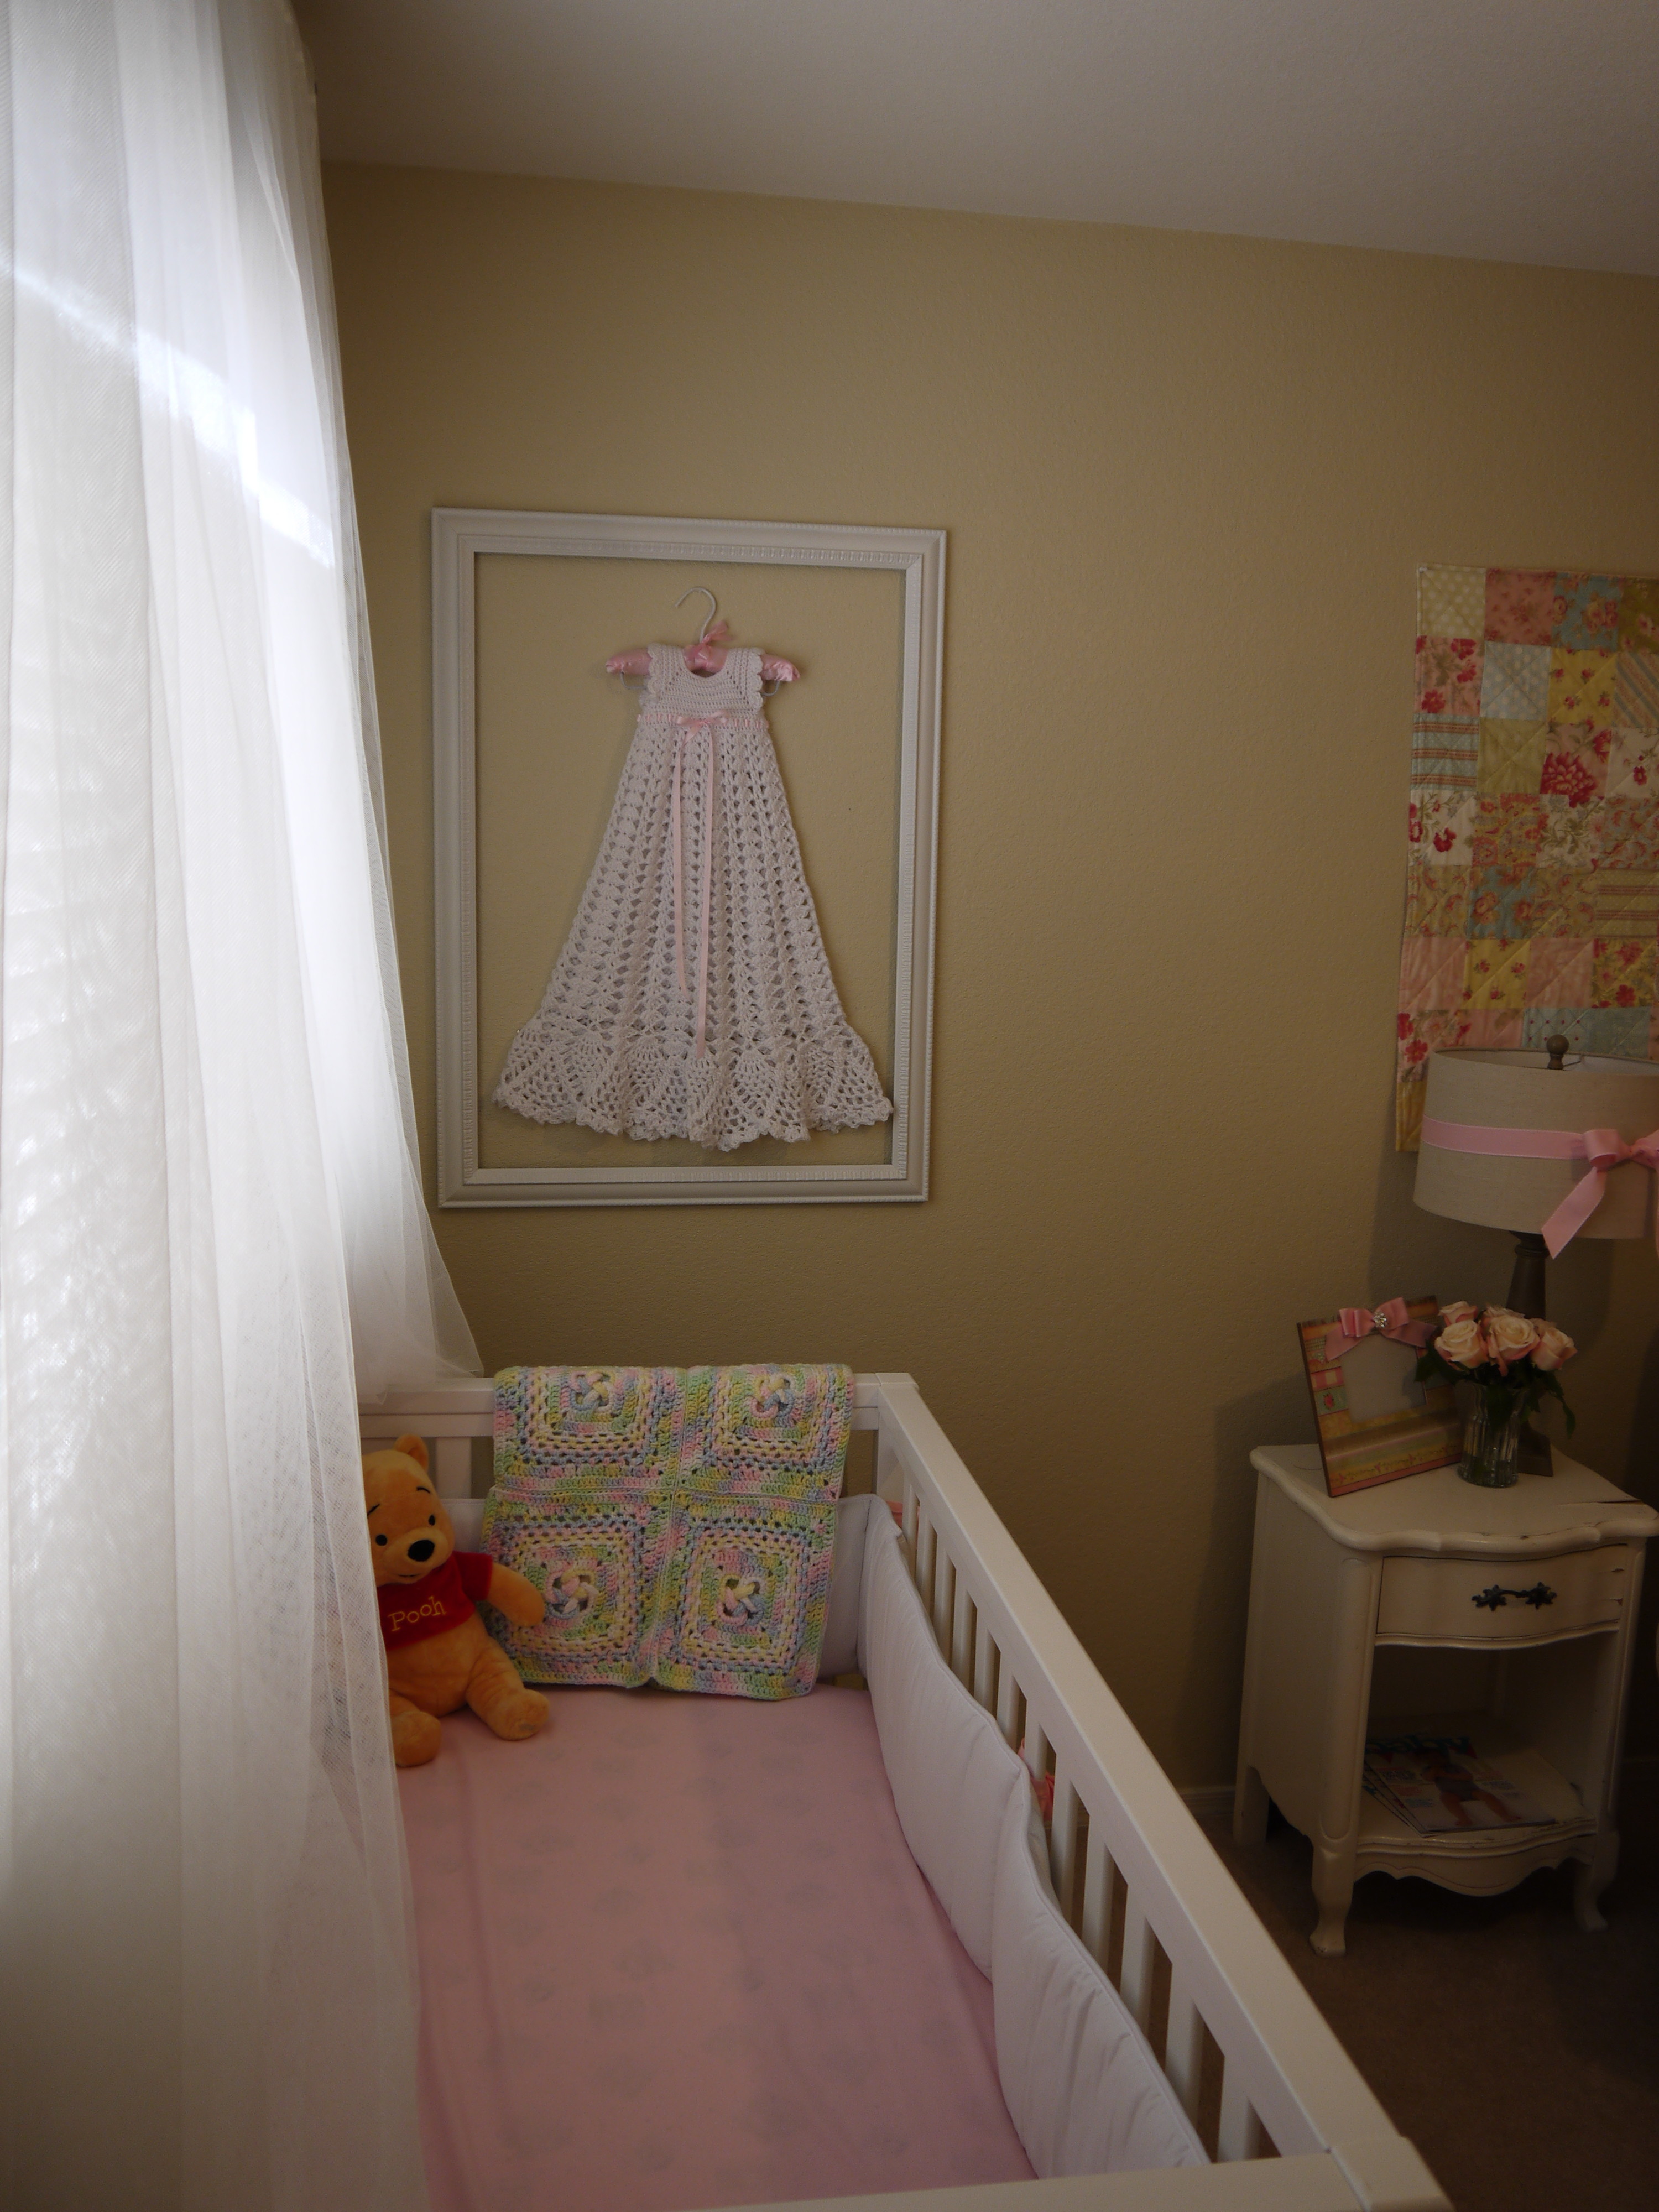 Baby Girl Shabby Chic Nursery Crib View